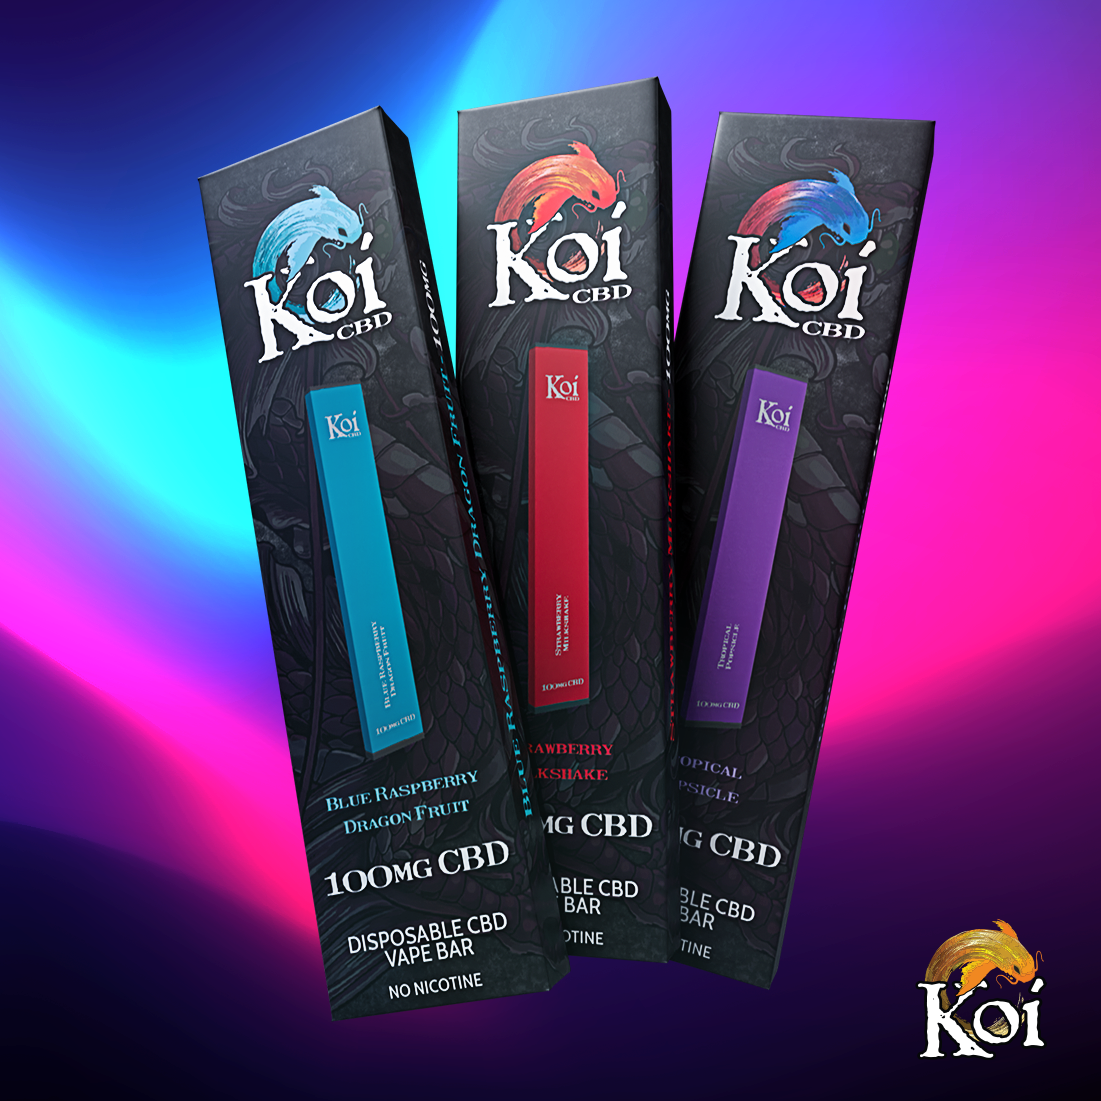 Koi CBD offers new CBD Disposable Vape Bars